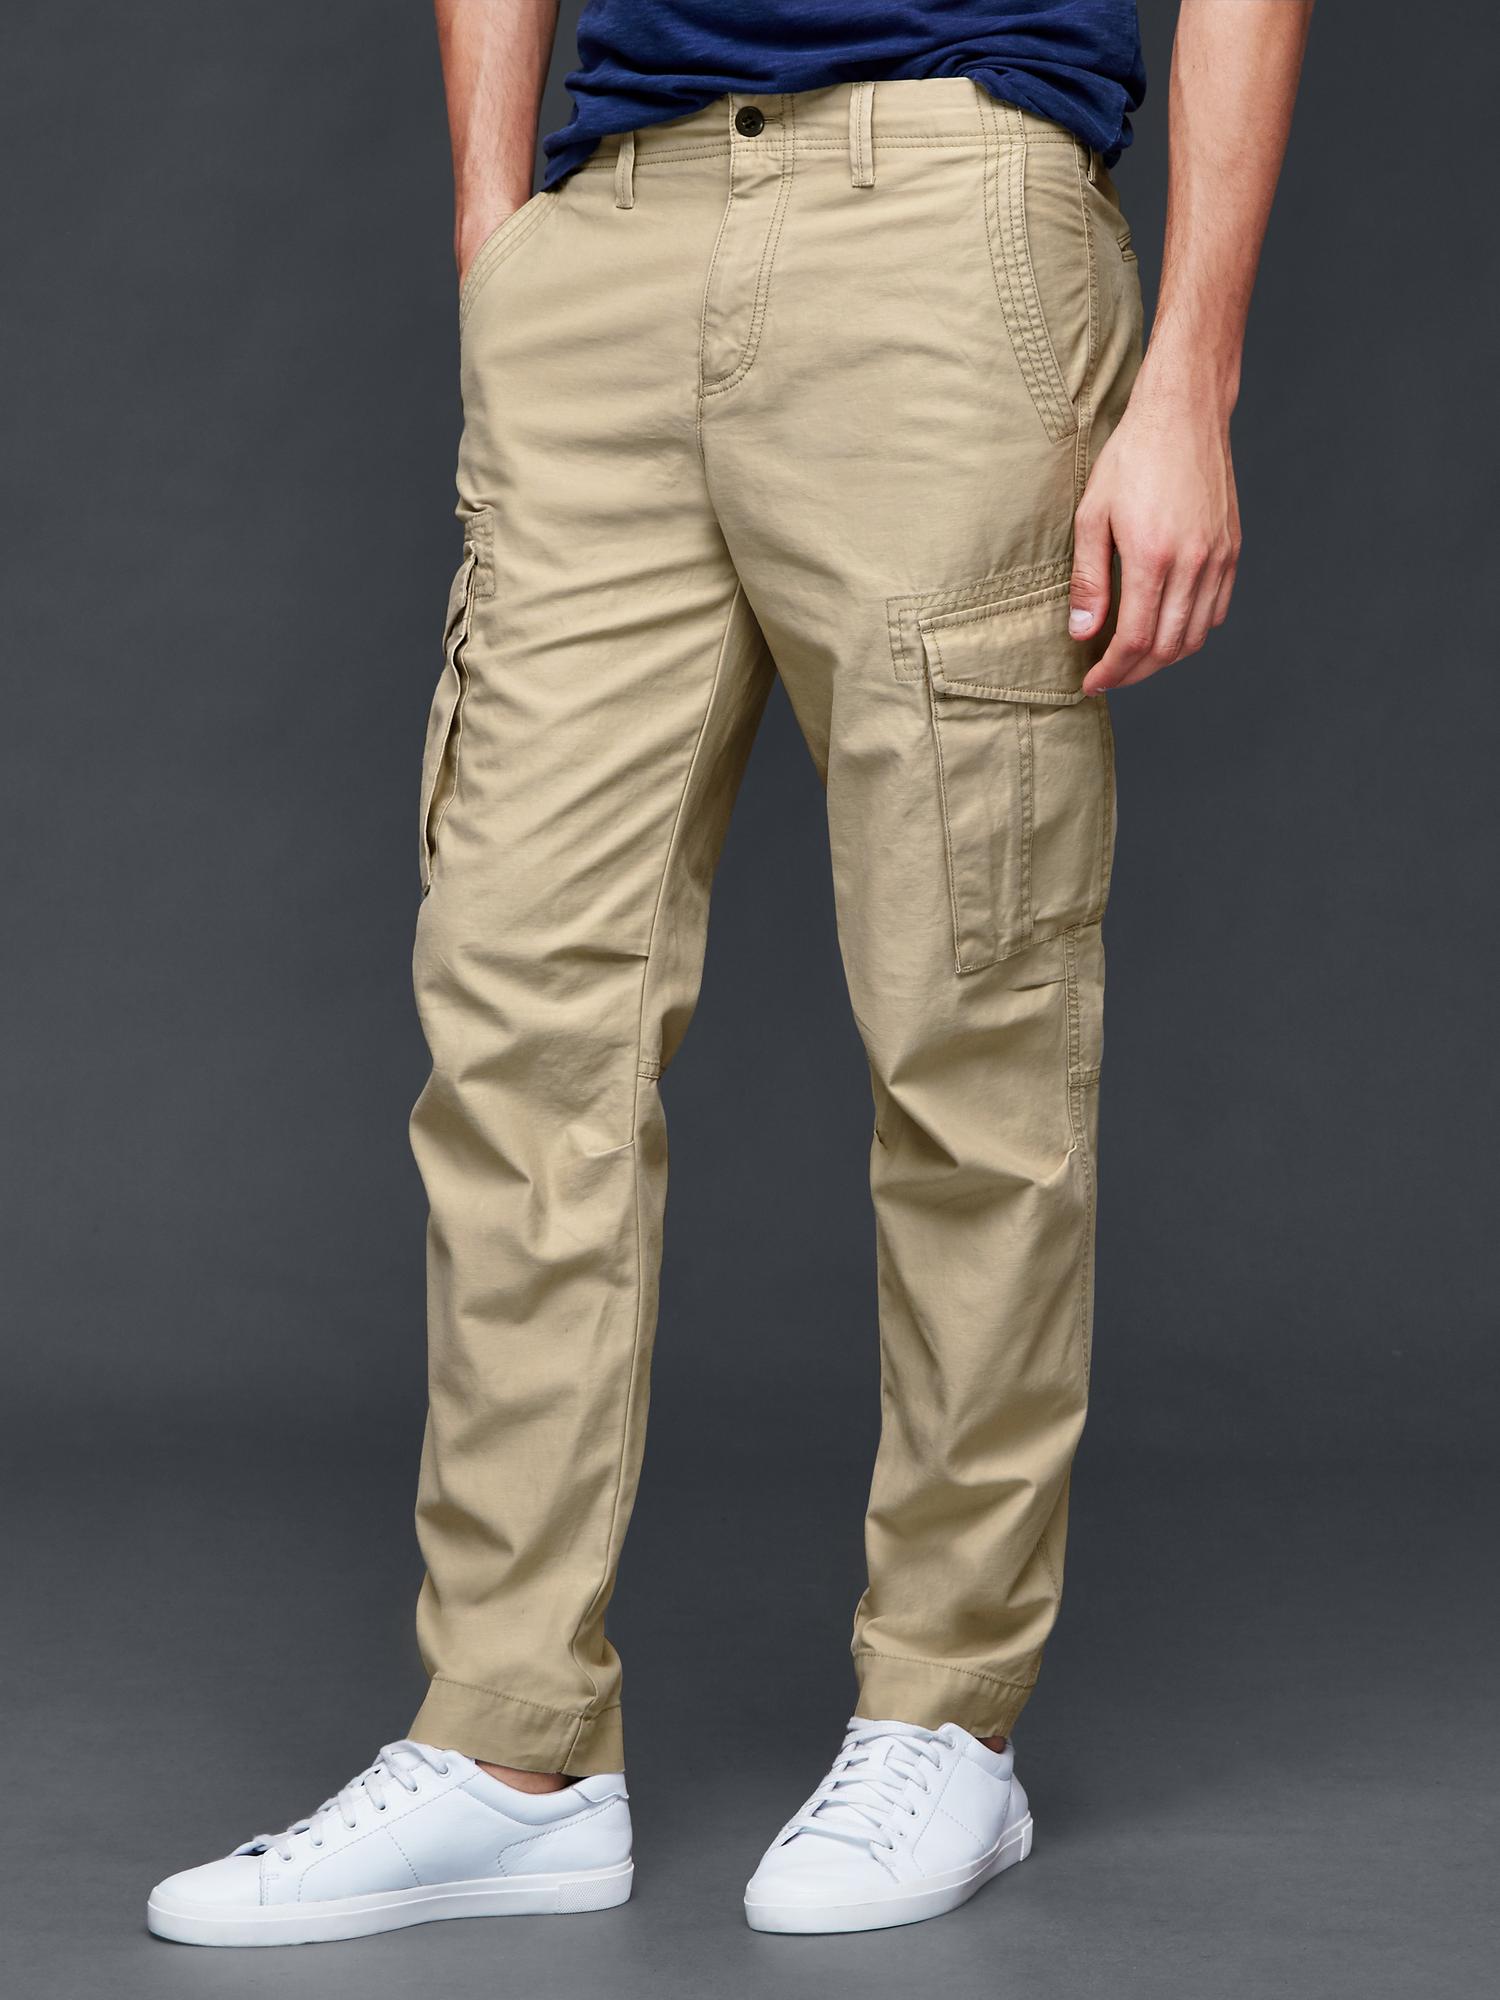 men's skinny fit cargo pants